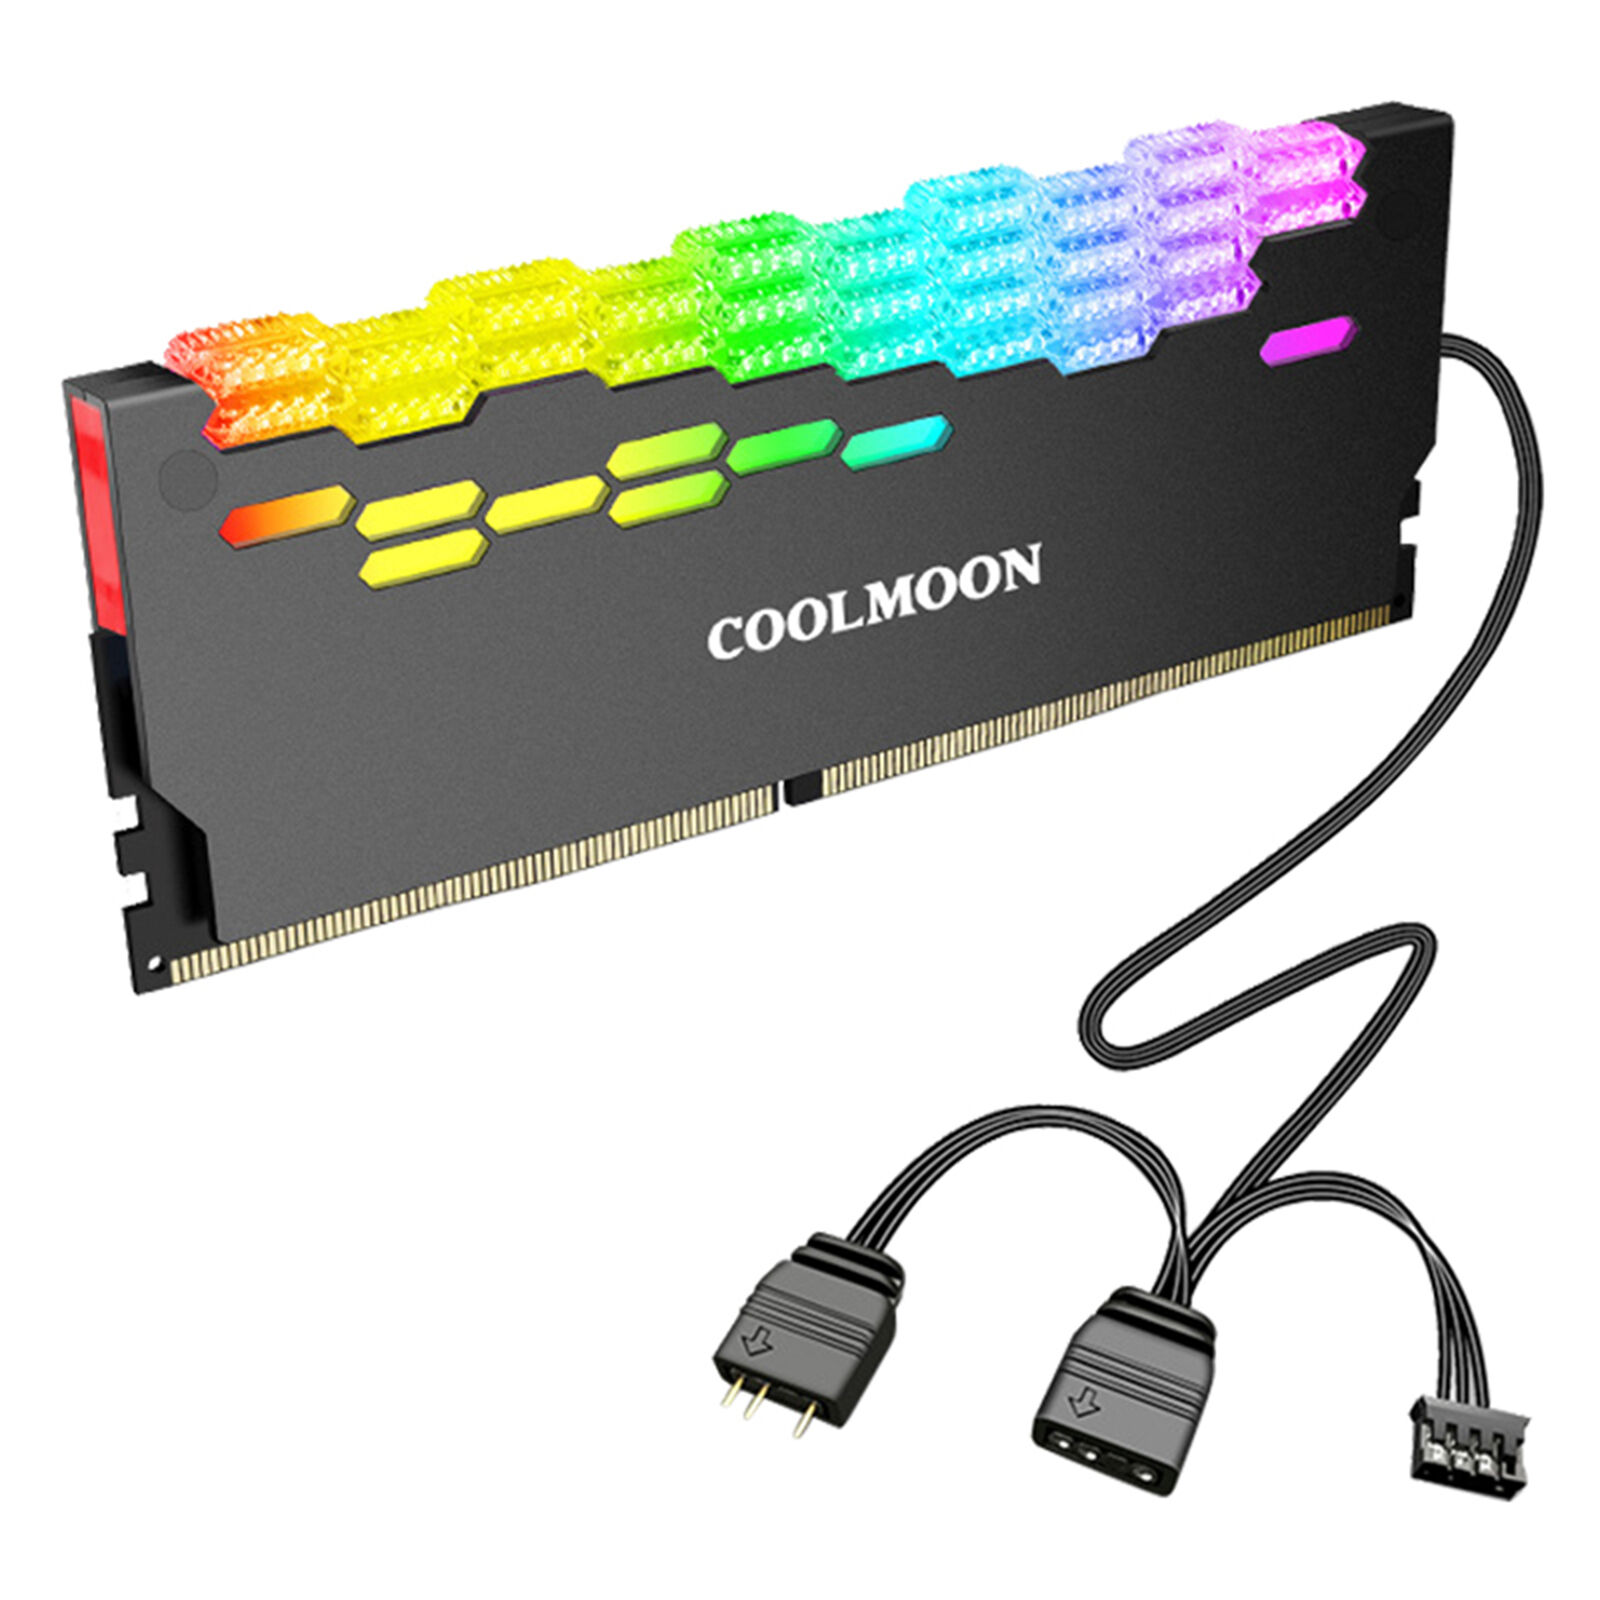 Coolmoon Ra-2 Ram Cooler Easy Installation 5v Argb 5v Argb Memory Heatsink